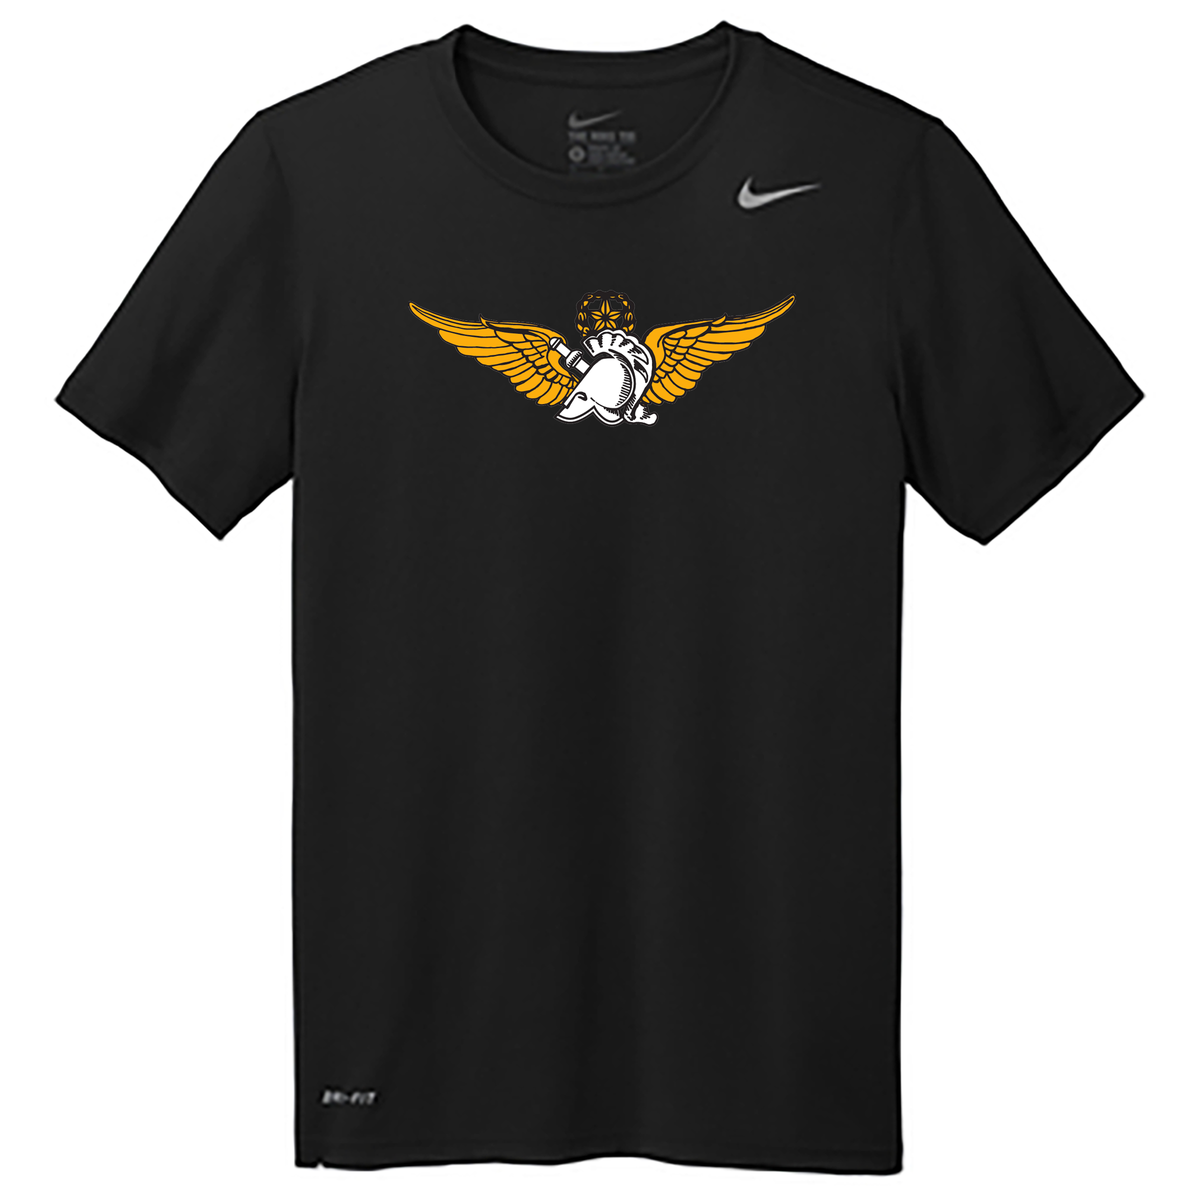 West Point Flight Team Nike Swoosh Sleeve rLegend Tee